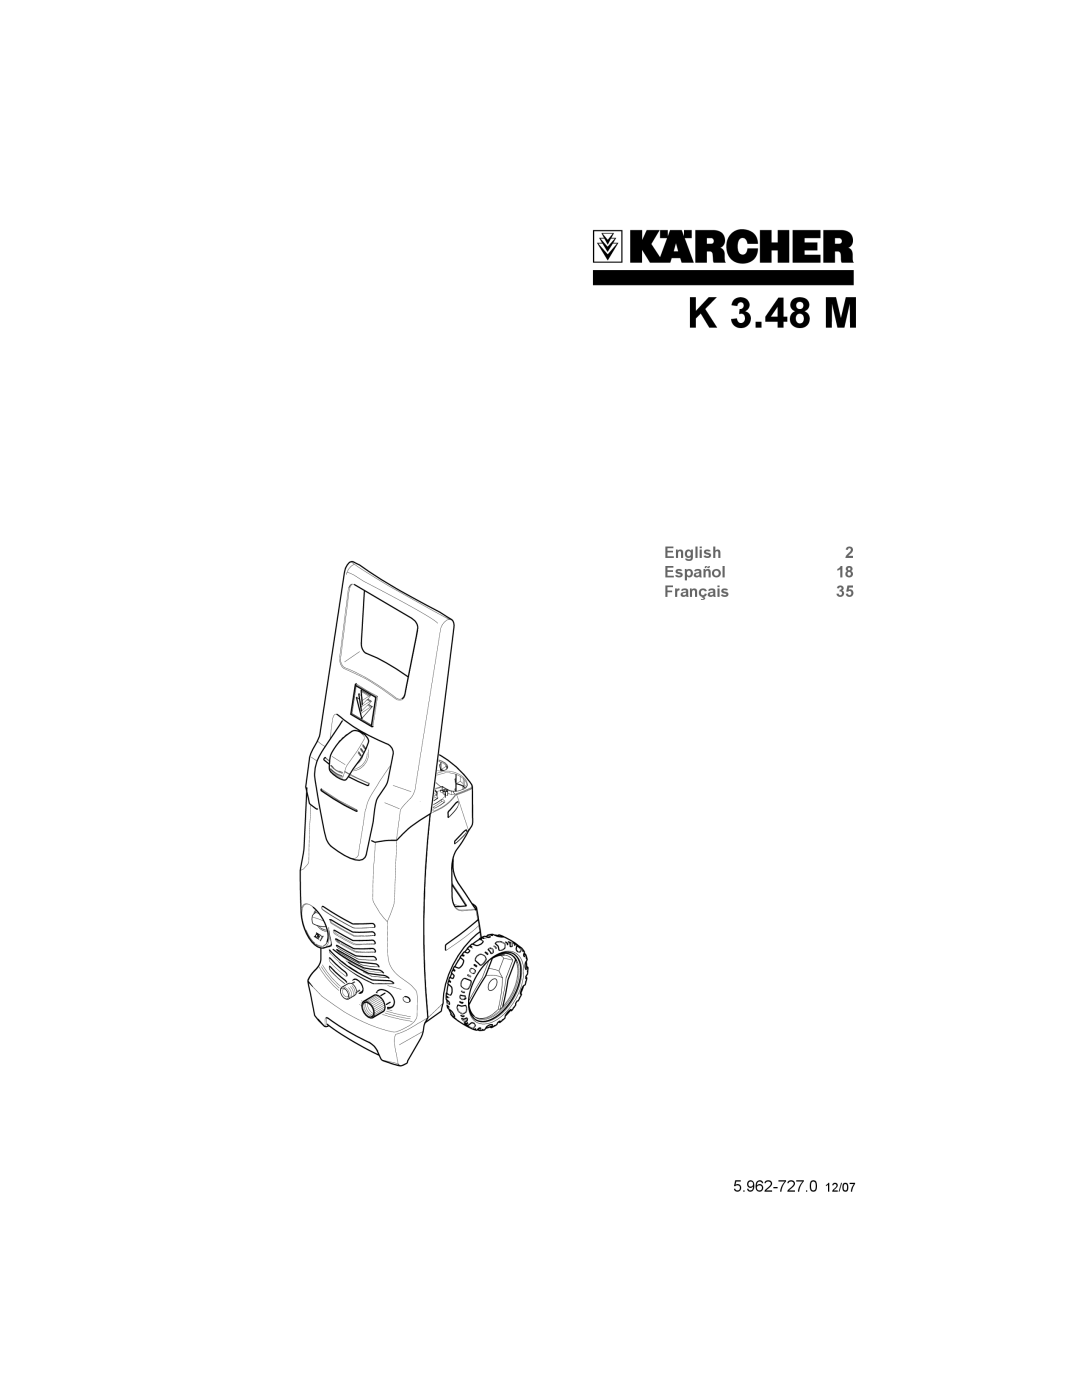 Karcher K 3.48 M manual English2 Español18 Français35, 5.962-727.0 12/07 